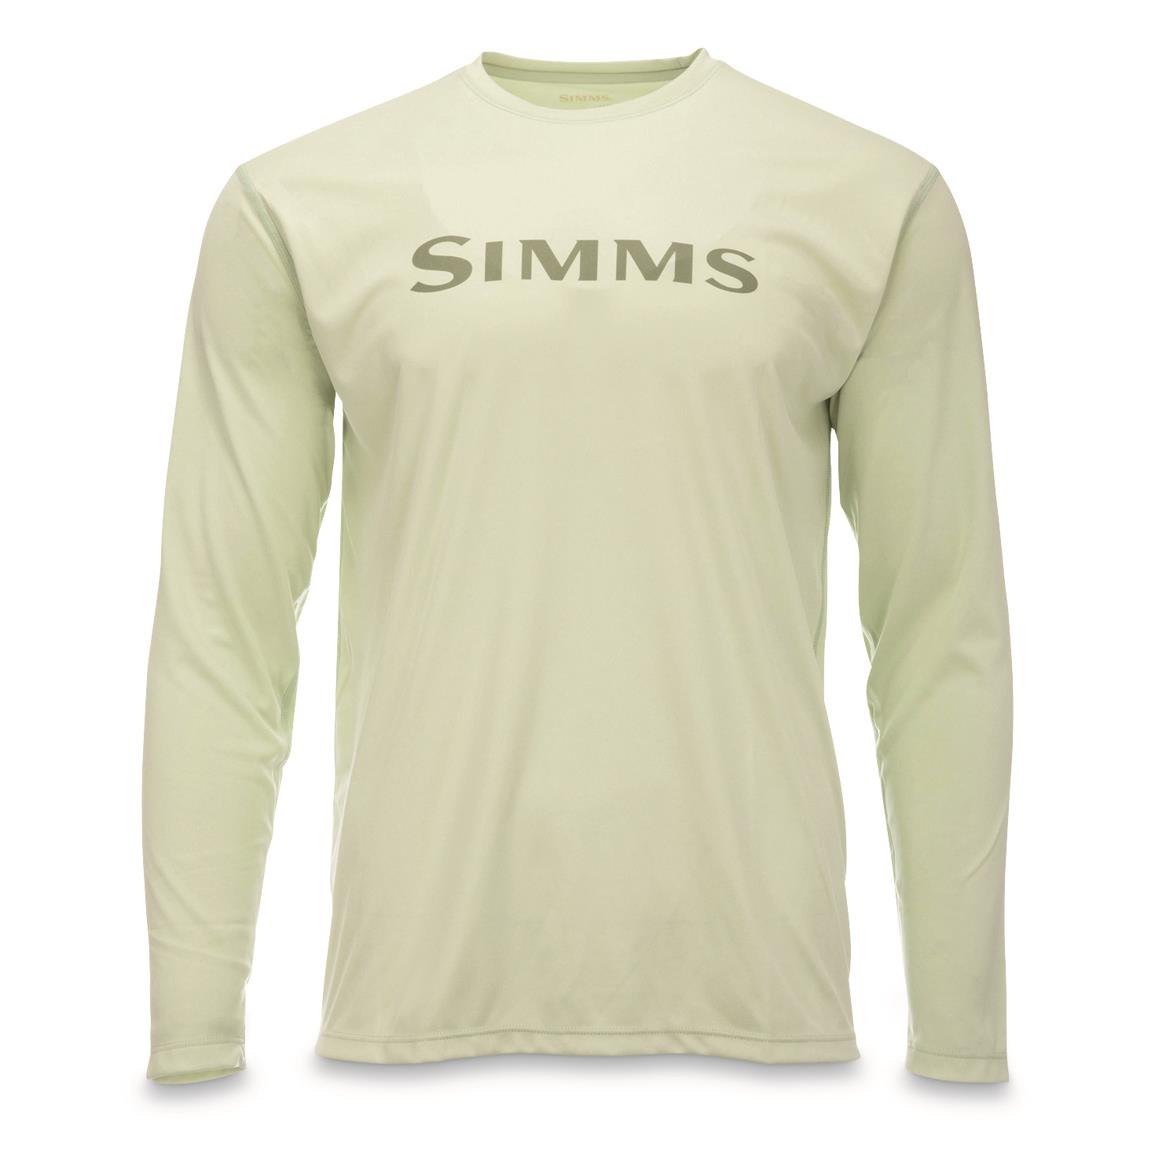 Simms Men's Tech Long-Sleeved Shirt, Light Green